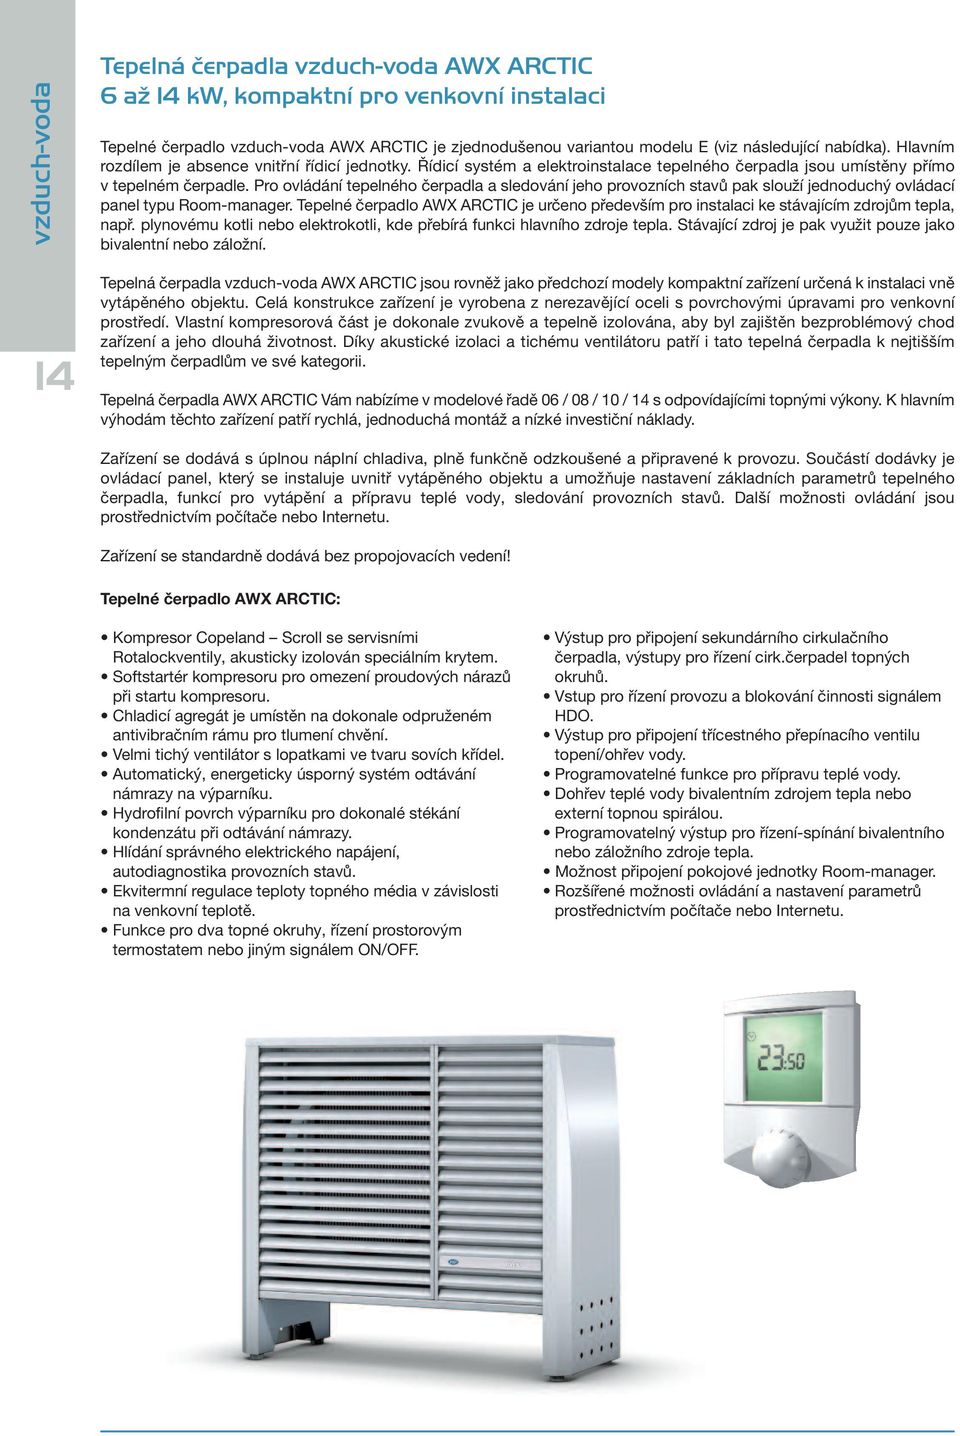 Pro ovládání tepelného čerpadla a sledování jeho provozních stavů pak slouží jednoduchý ovládací panel typu Room-manager.